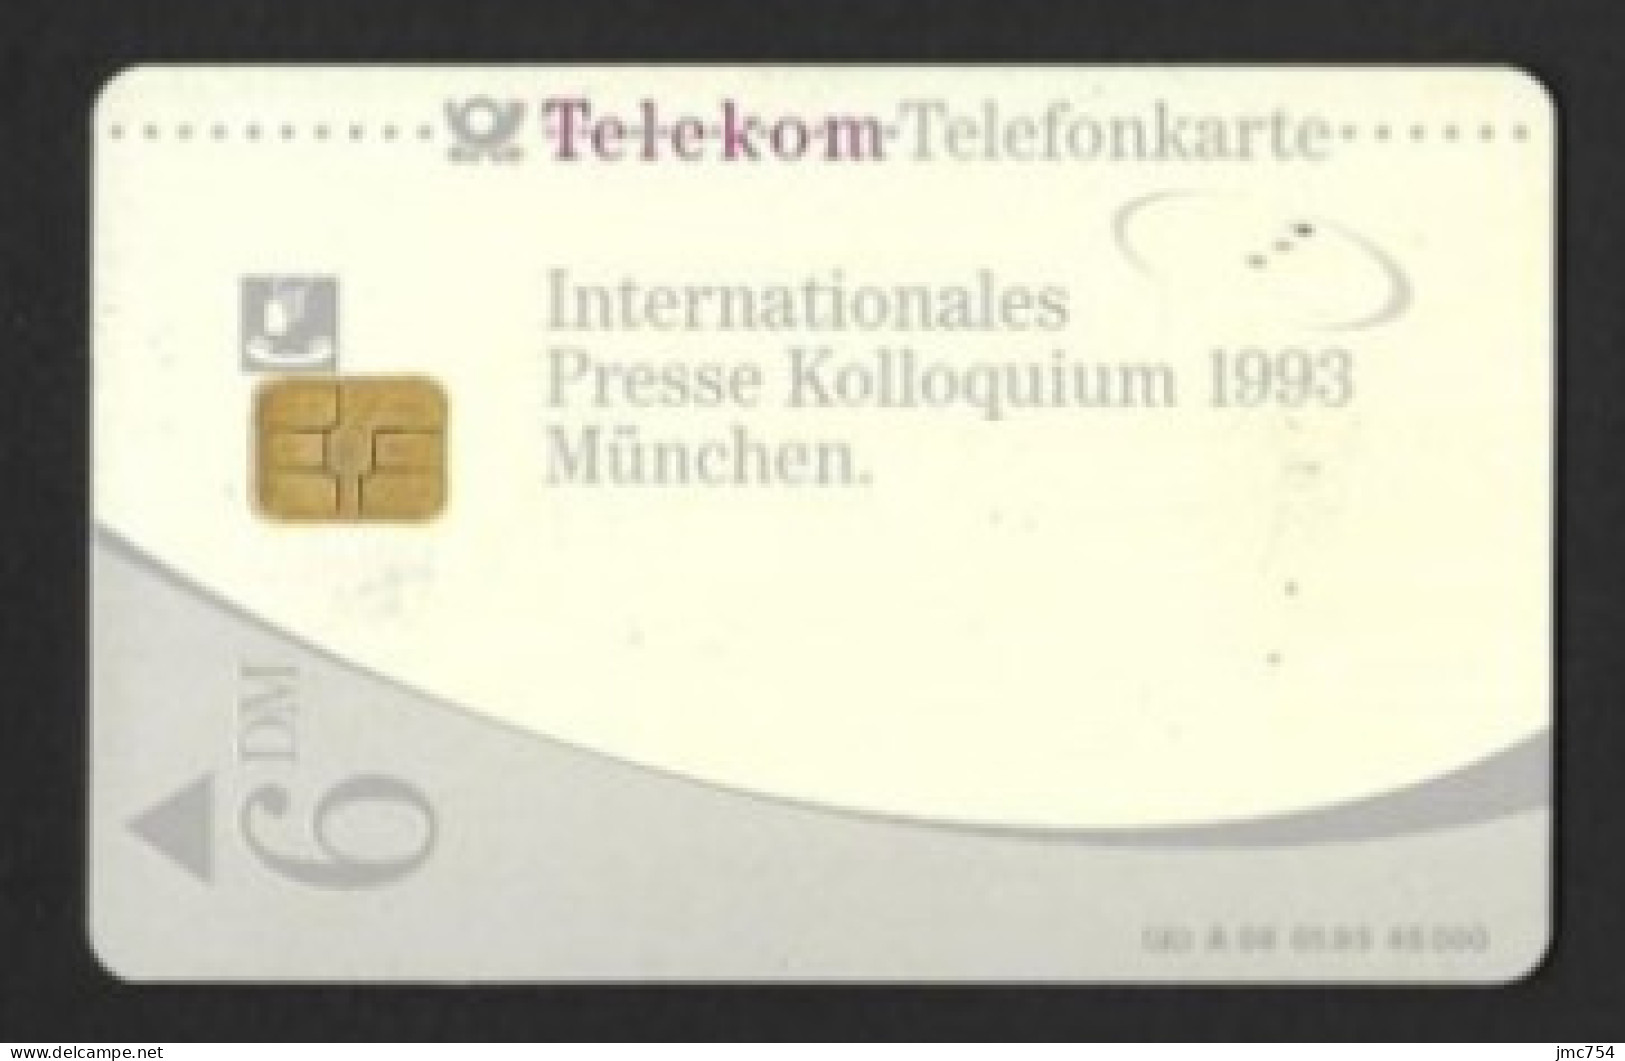 Télécarte Allemande.  Internationales Presse Kolloquium 1993 München.   Telefonkarte. - Sammlungen